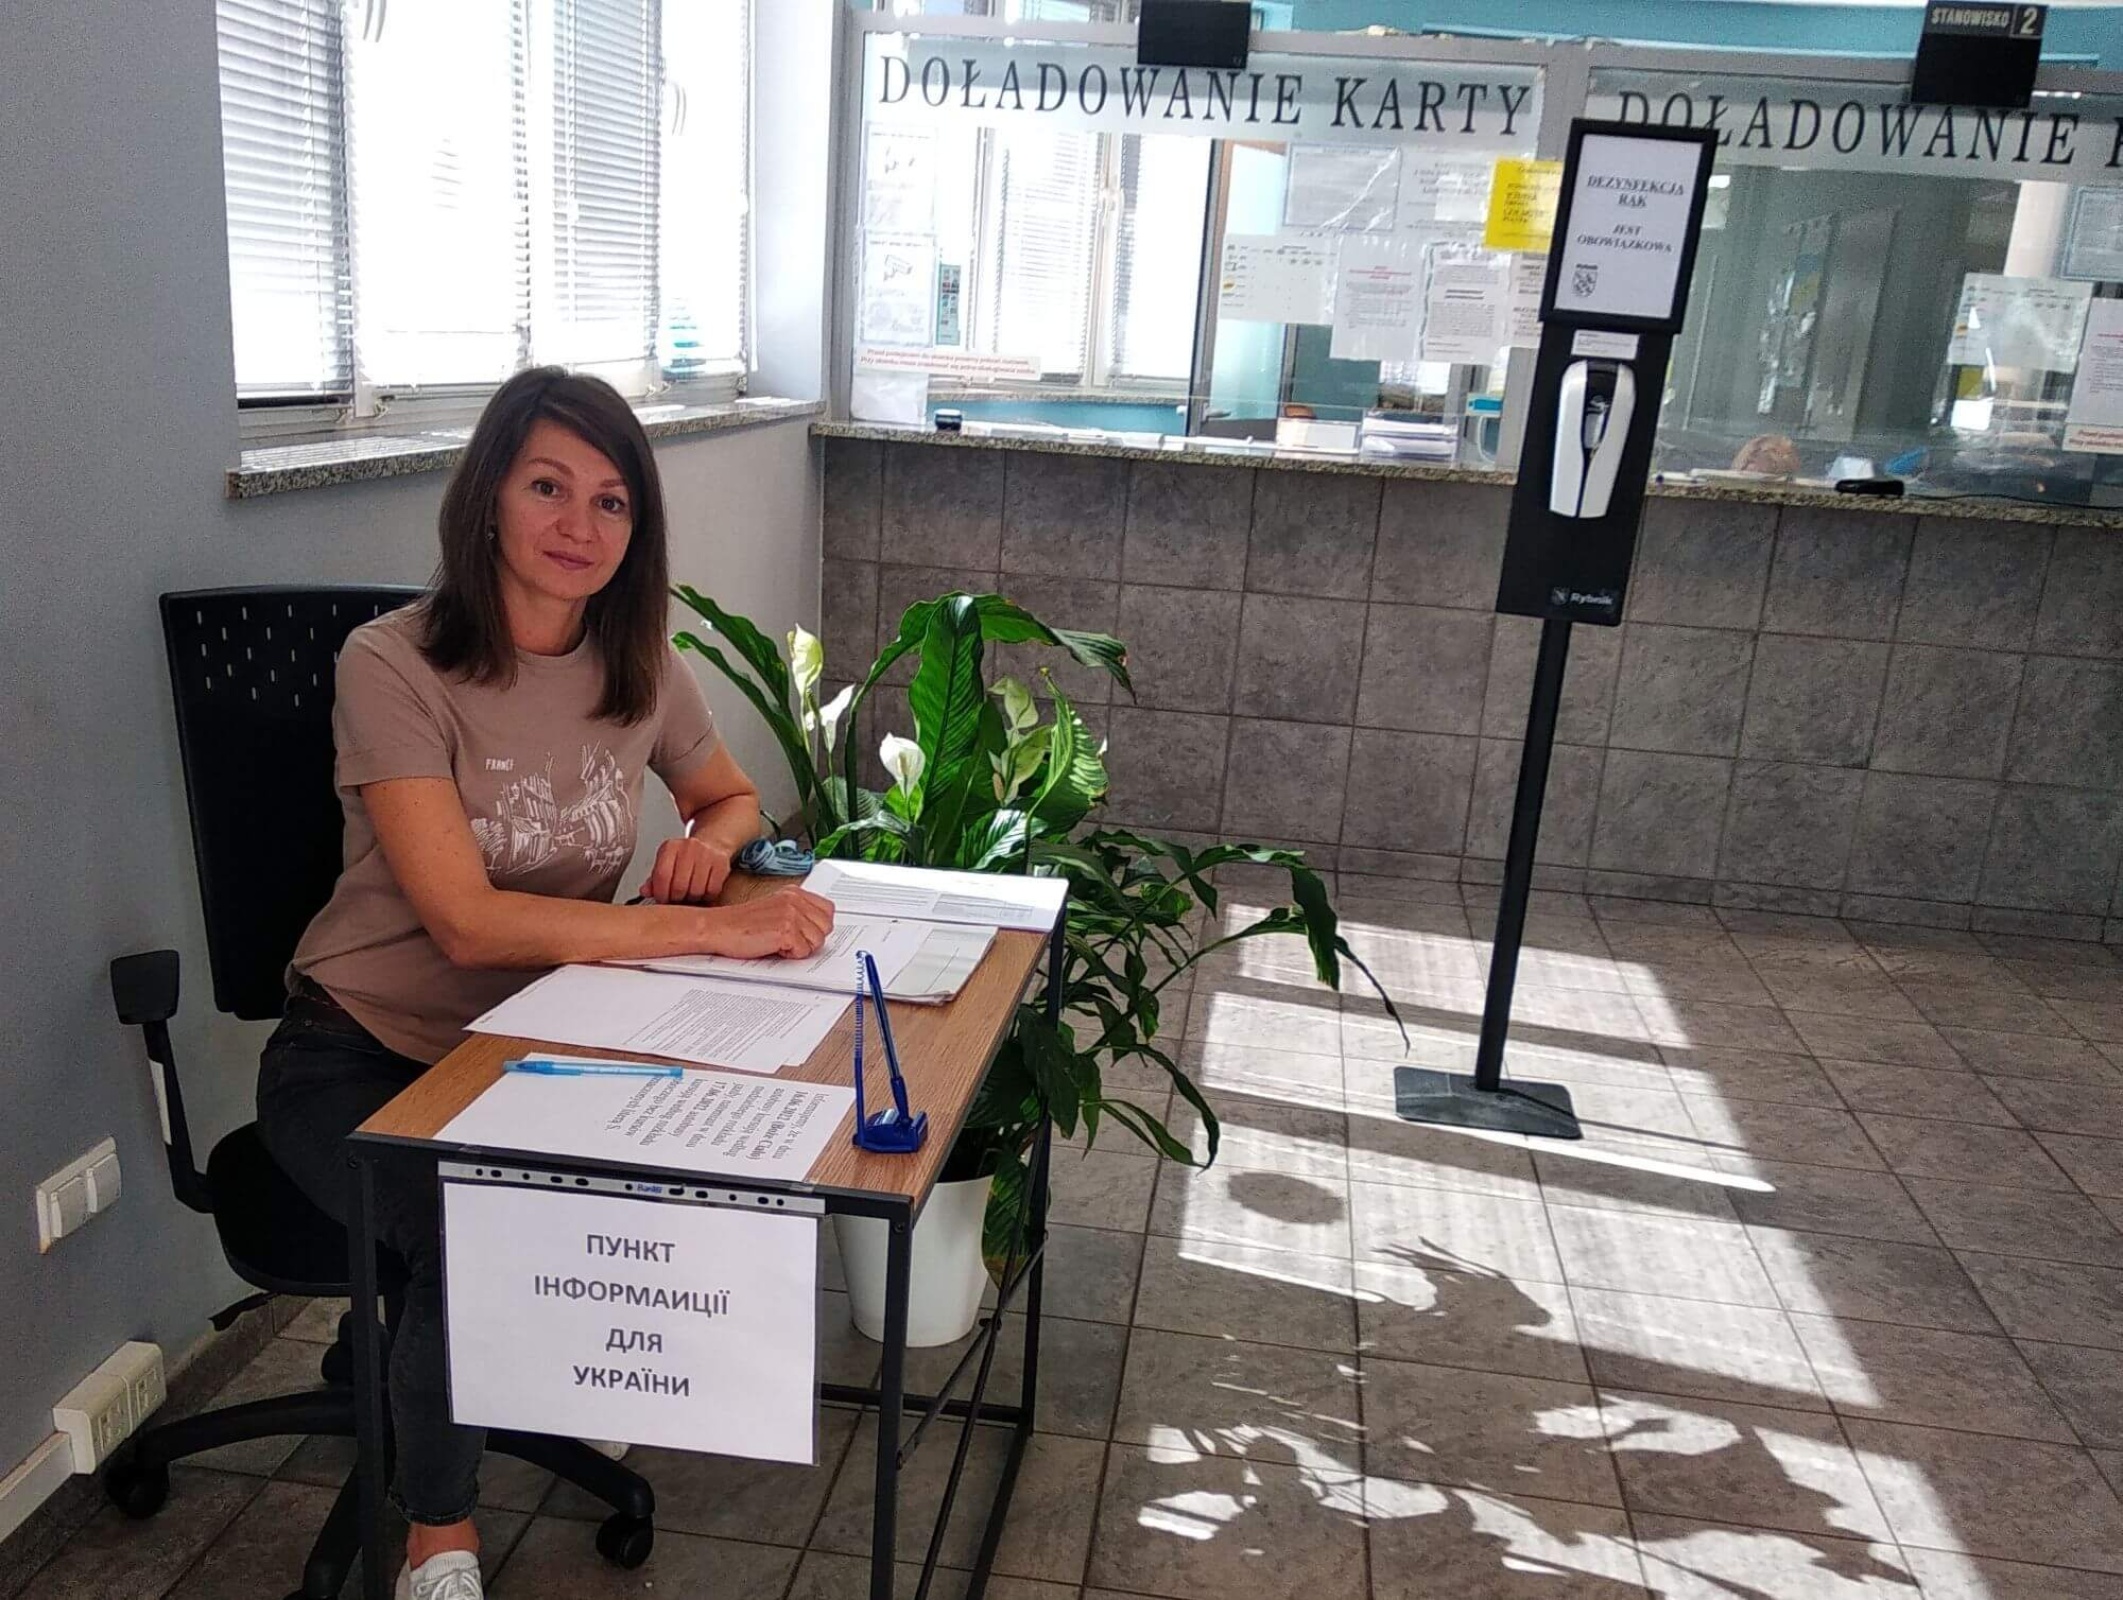 Spółka Komunikacja Miejska Rybnik zatrudniła panią Svitlanę, która zajmuje się obsługą klienta w języku ukraińskim. 